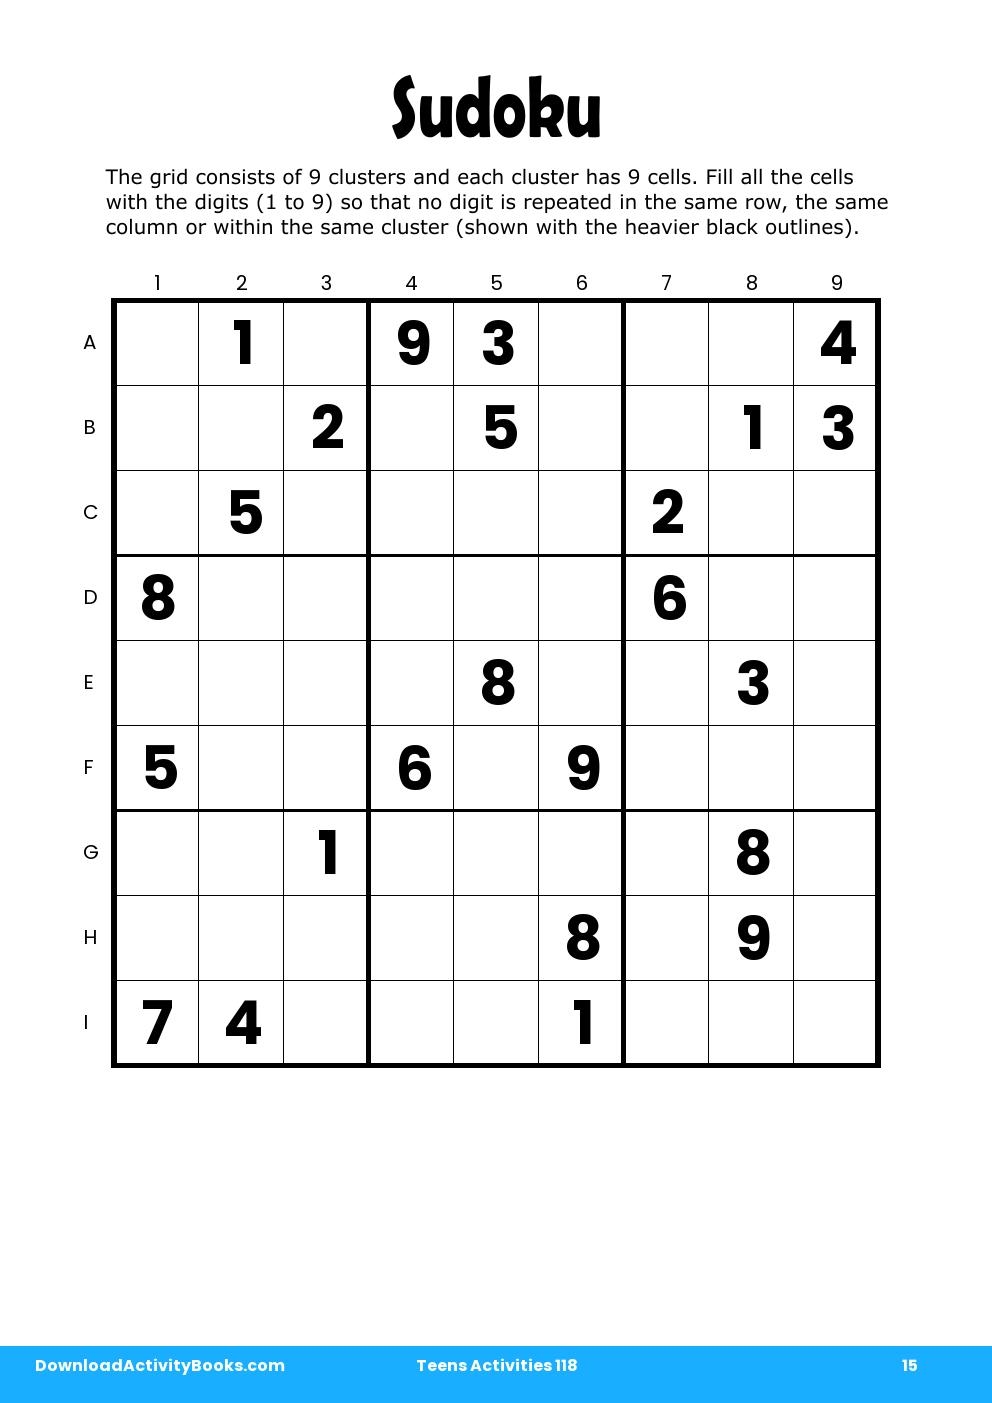 Sudoku in Teens Activities 118